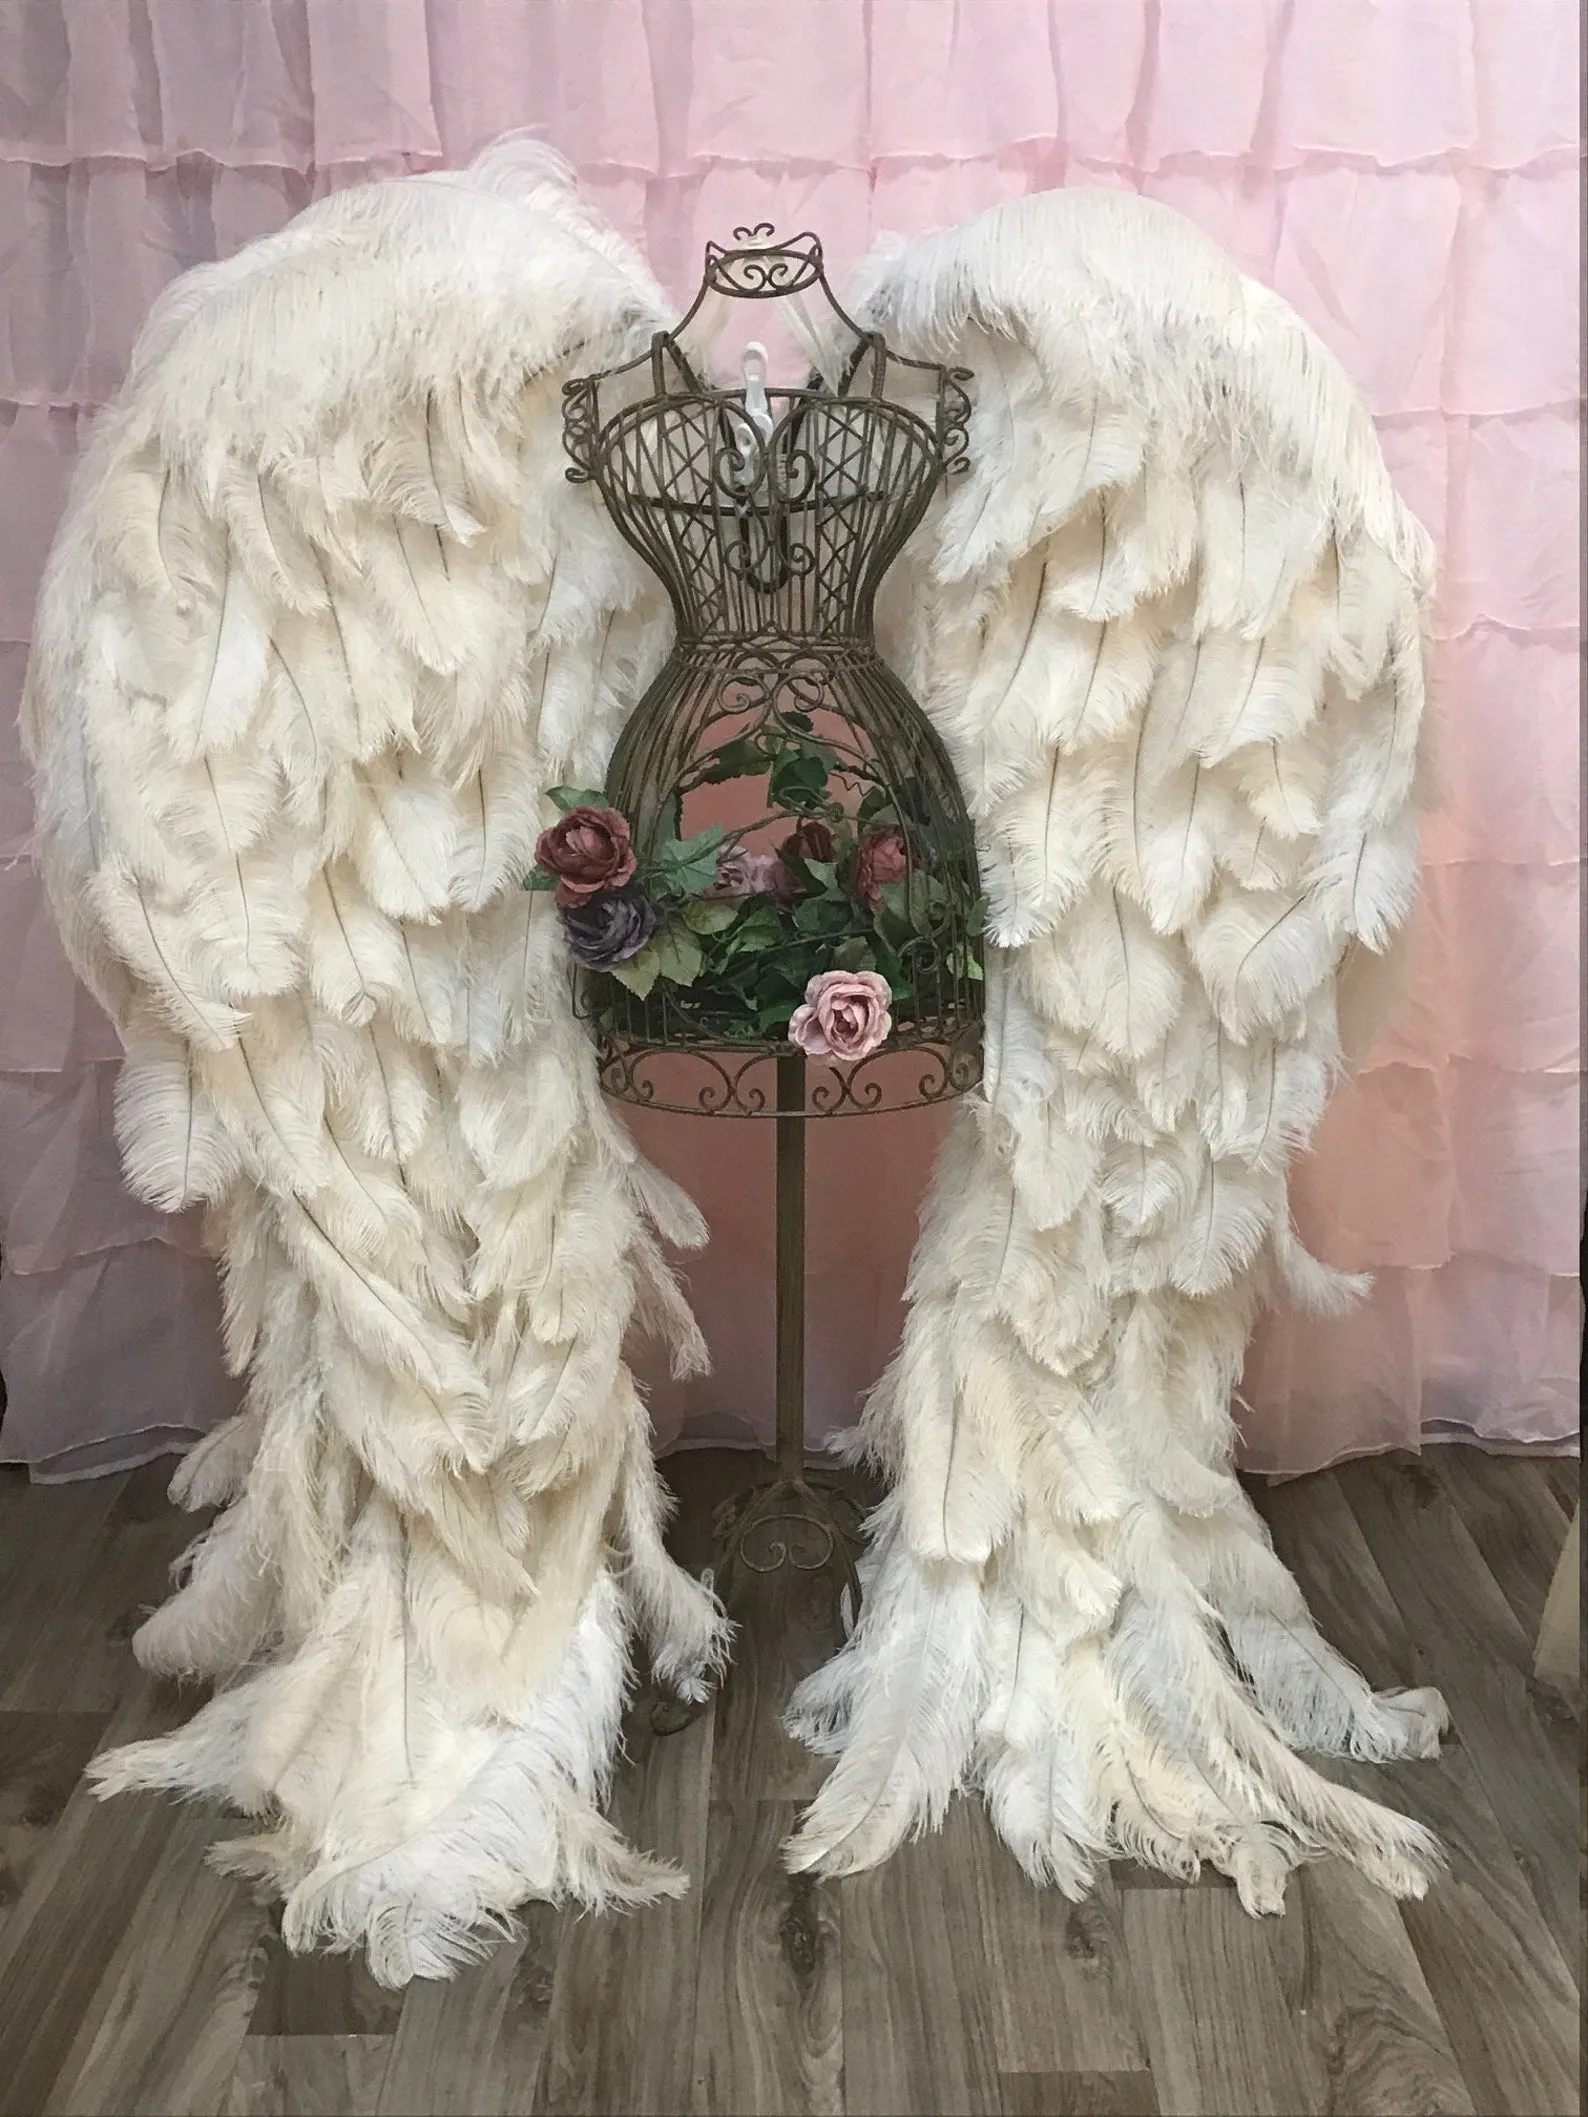 Rocznica ślubu dekoracja imprezowa dorośli wysokiej jakości strusie pióro piękne miękkie skrzydła anioła niesamowite rekwizyty fotograficzne